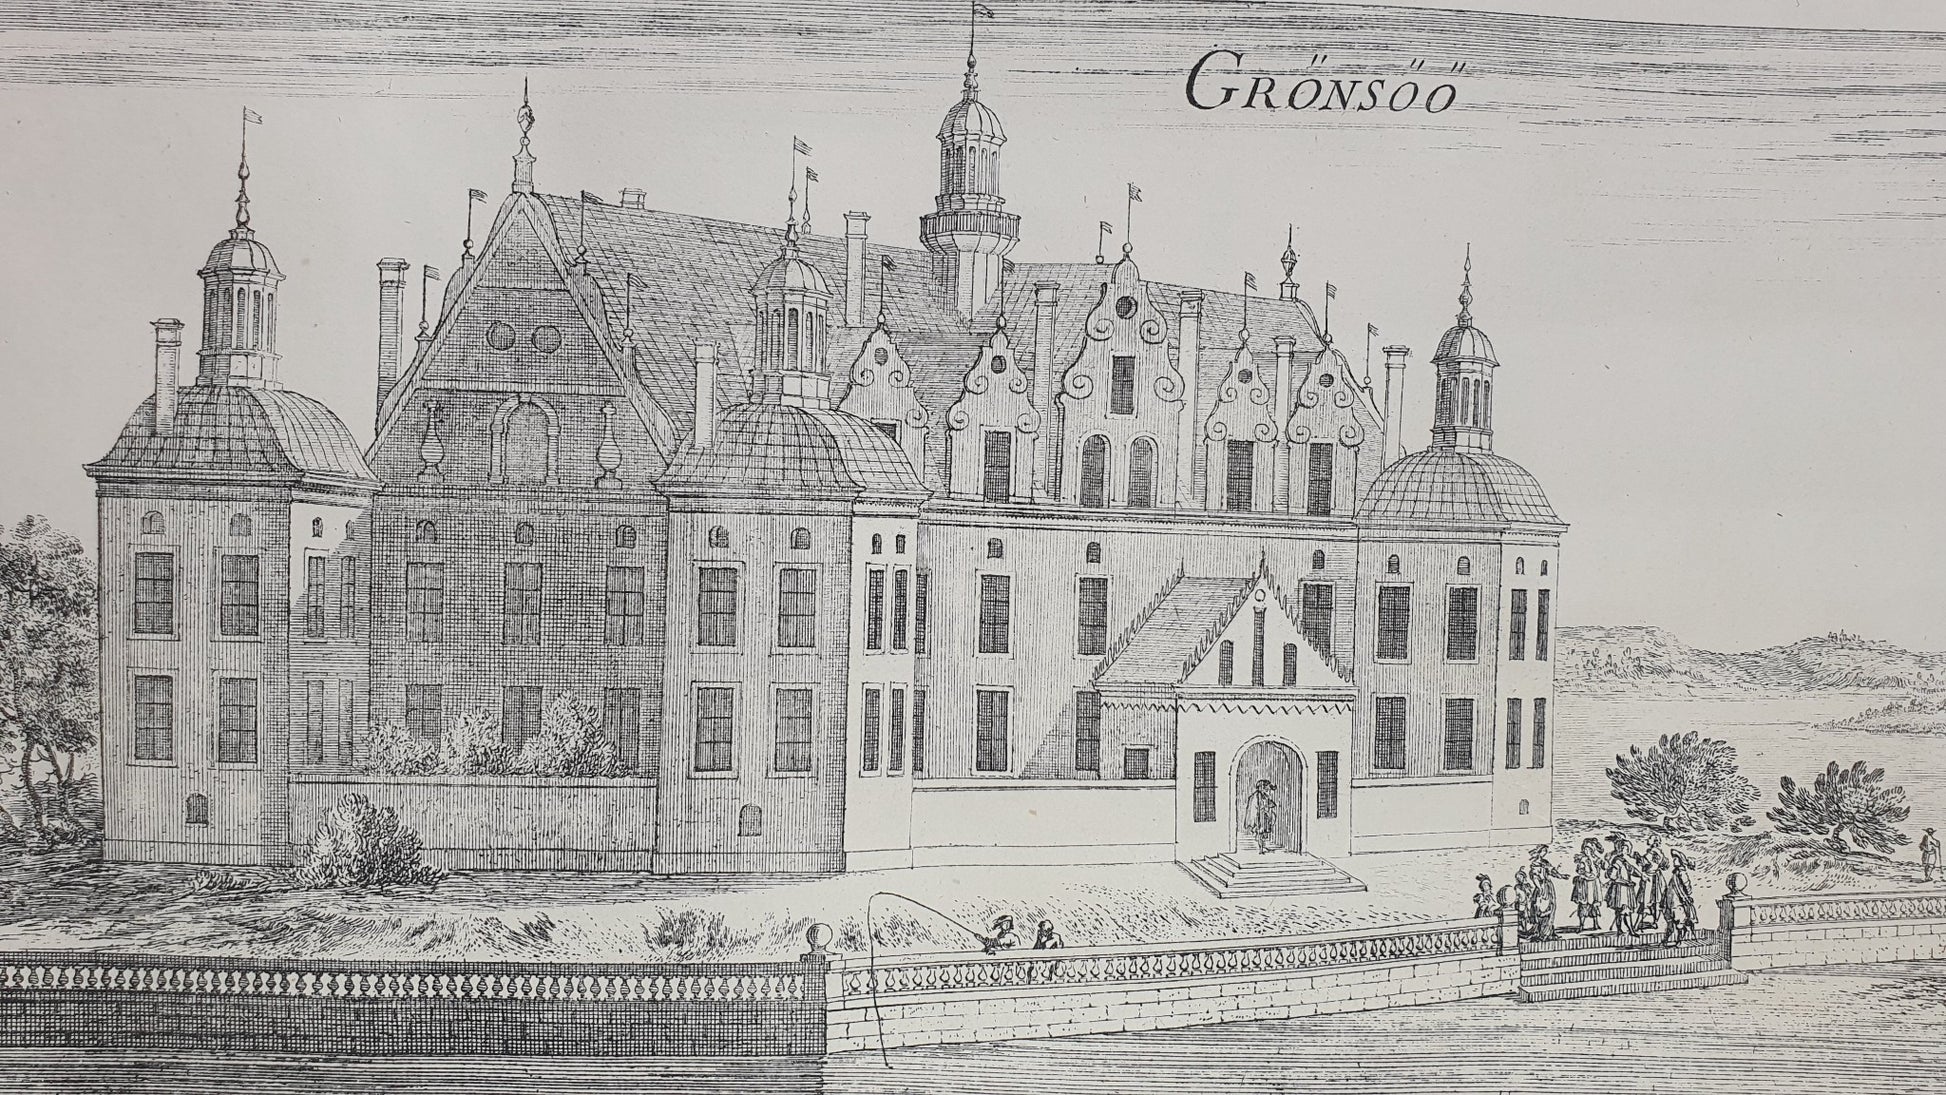 Antique Topographical Print - Gorvalns Castle, Jarfalla - Gronso Castle - Sweden - Dahlströms Fine Art